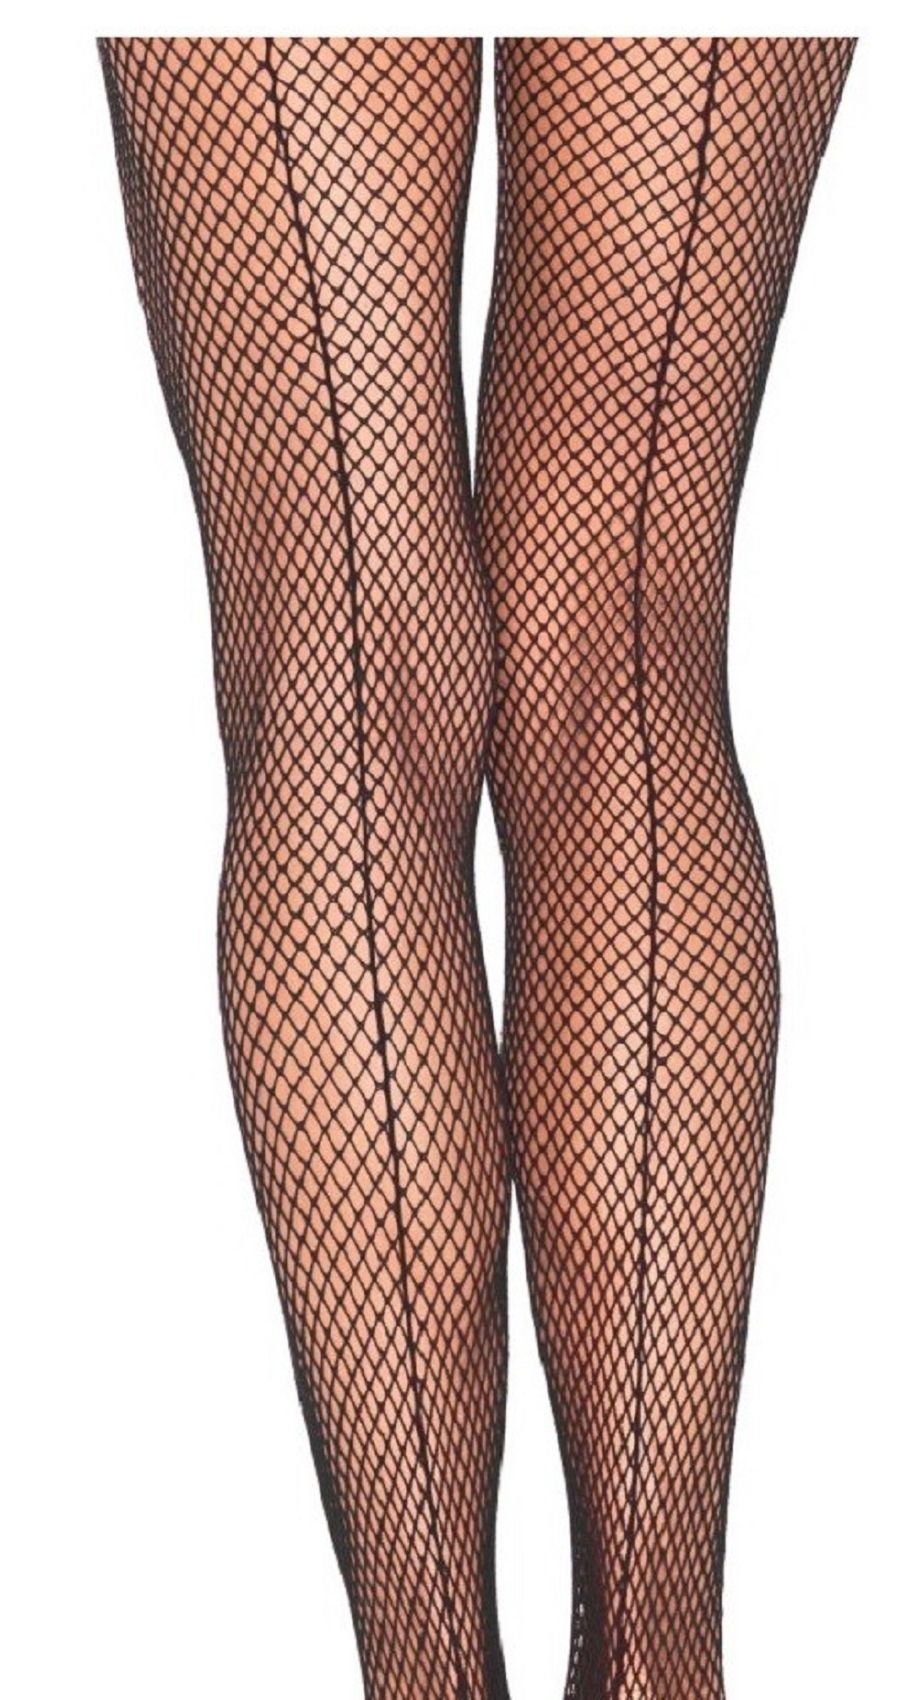 Leg Avenue Strumpfhose Plus Size Damen Strumpfhose Netz mit rückwärtiger Naht schwarz transparent Einheitsgröße ca. 42 bis 44 0 DEN